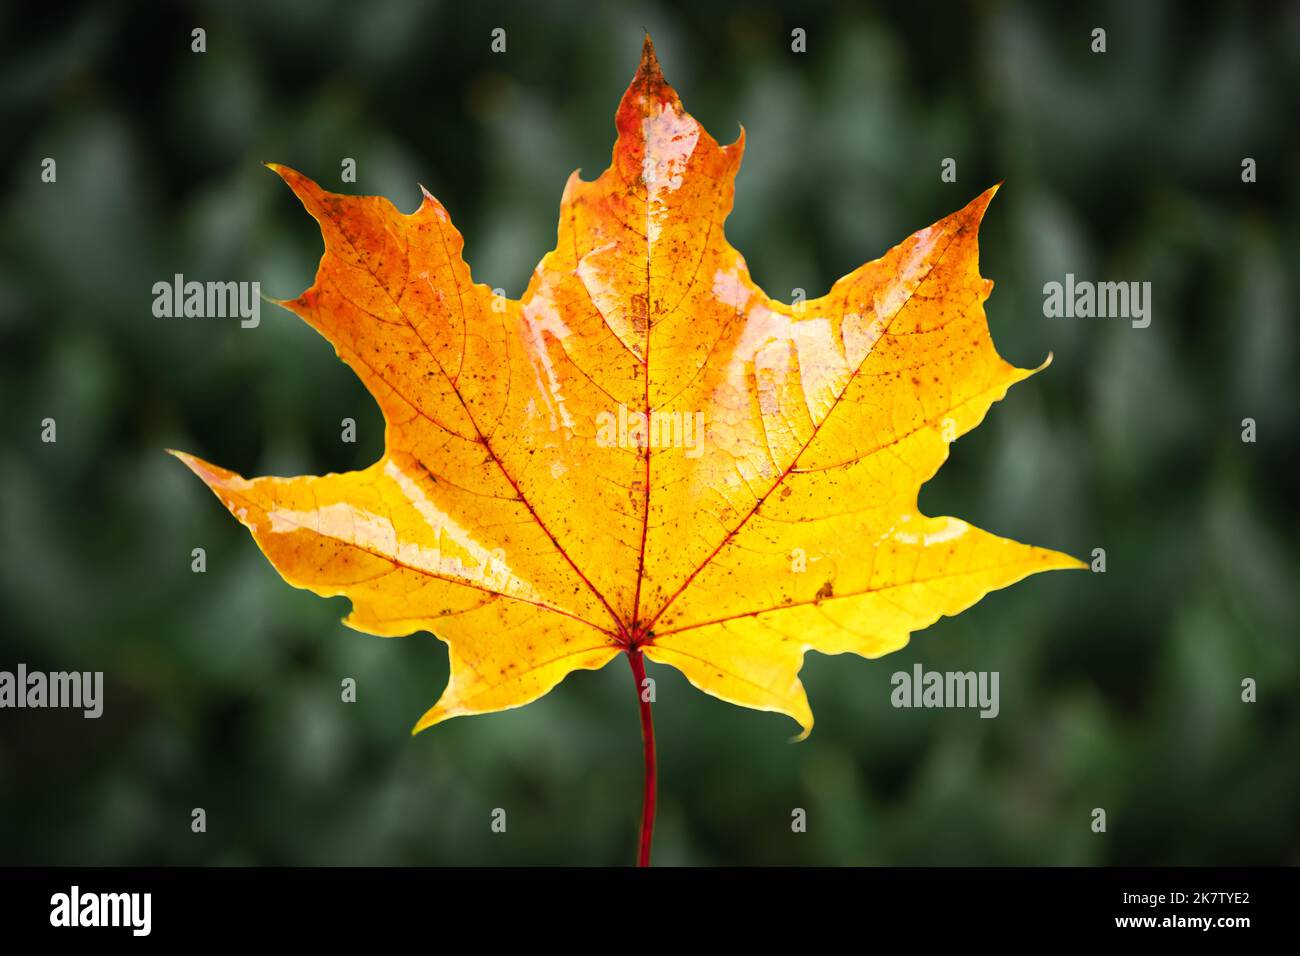 Orange autumn maple leaf close up. Fall season concept Stock Photo